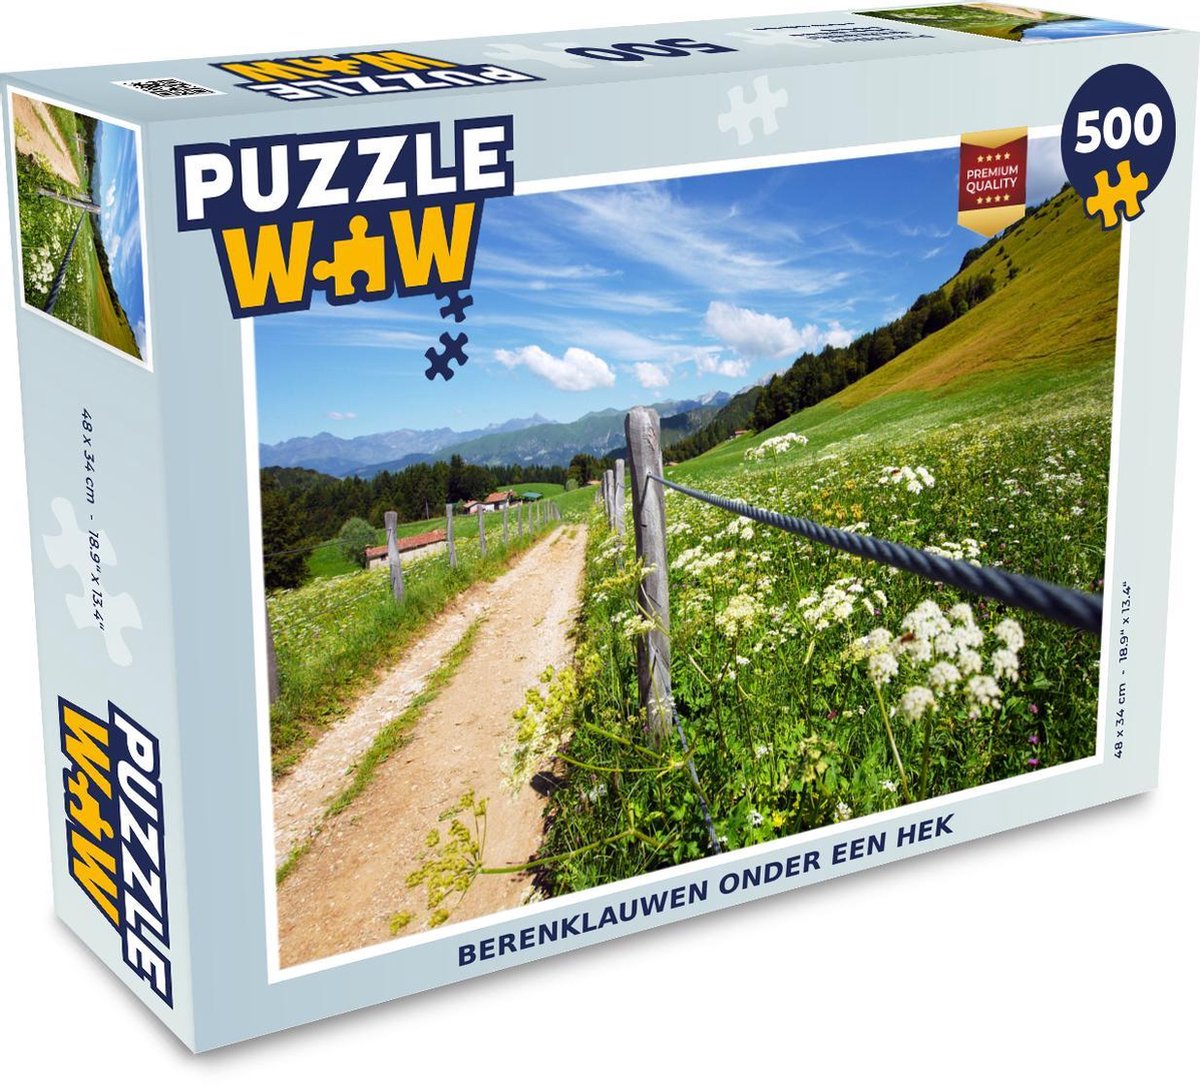 Afbeelding van product Puzzel 500 stukjes Berenklauw - Berenklauwen onder een hek puzzel 500 stukjes - PuzzleWow heeft +100000 puzzels